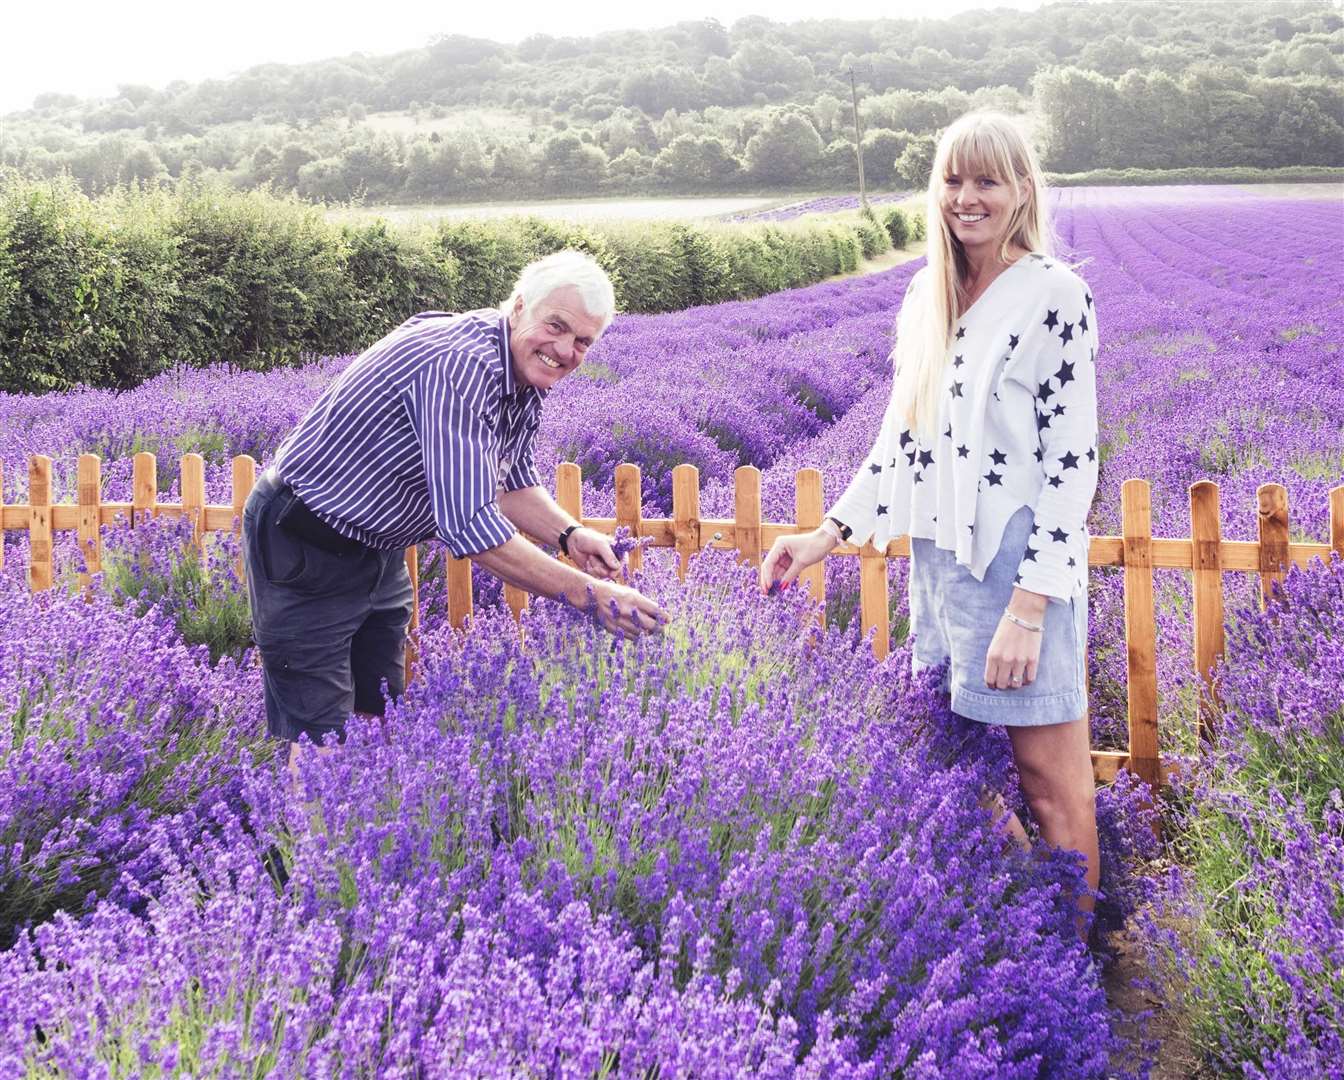 Buy Castle Farm Lavender Plants online - Castle Farm Shop